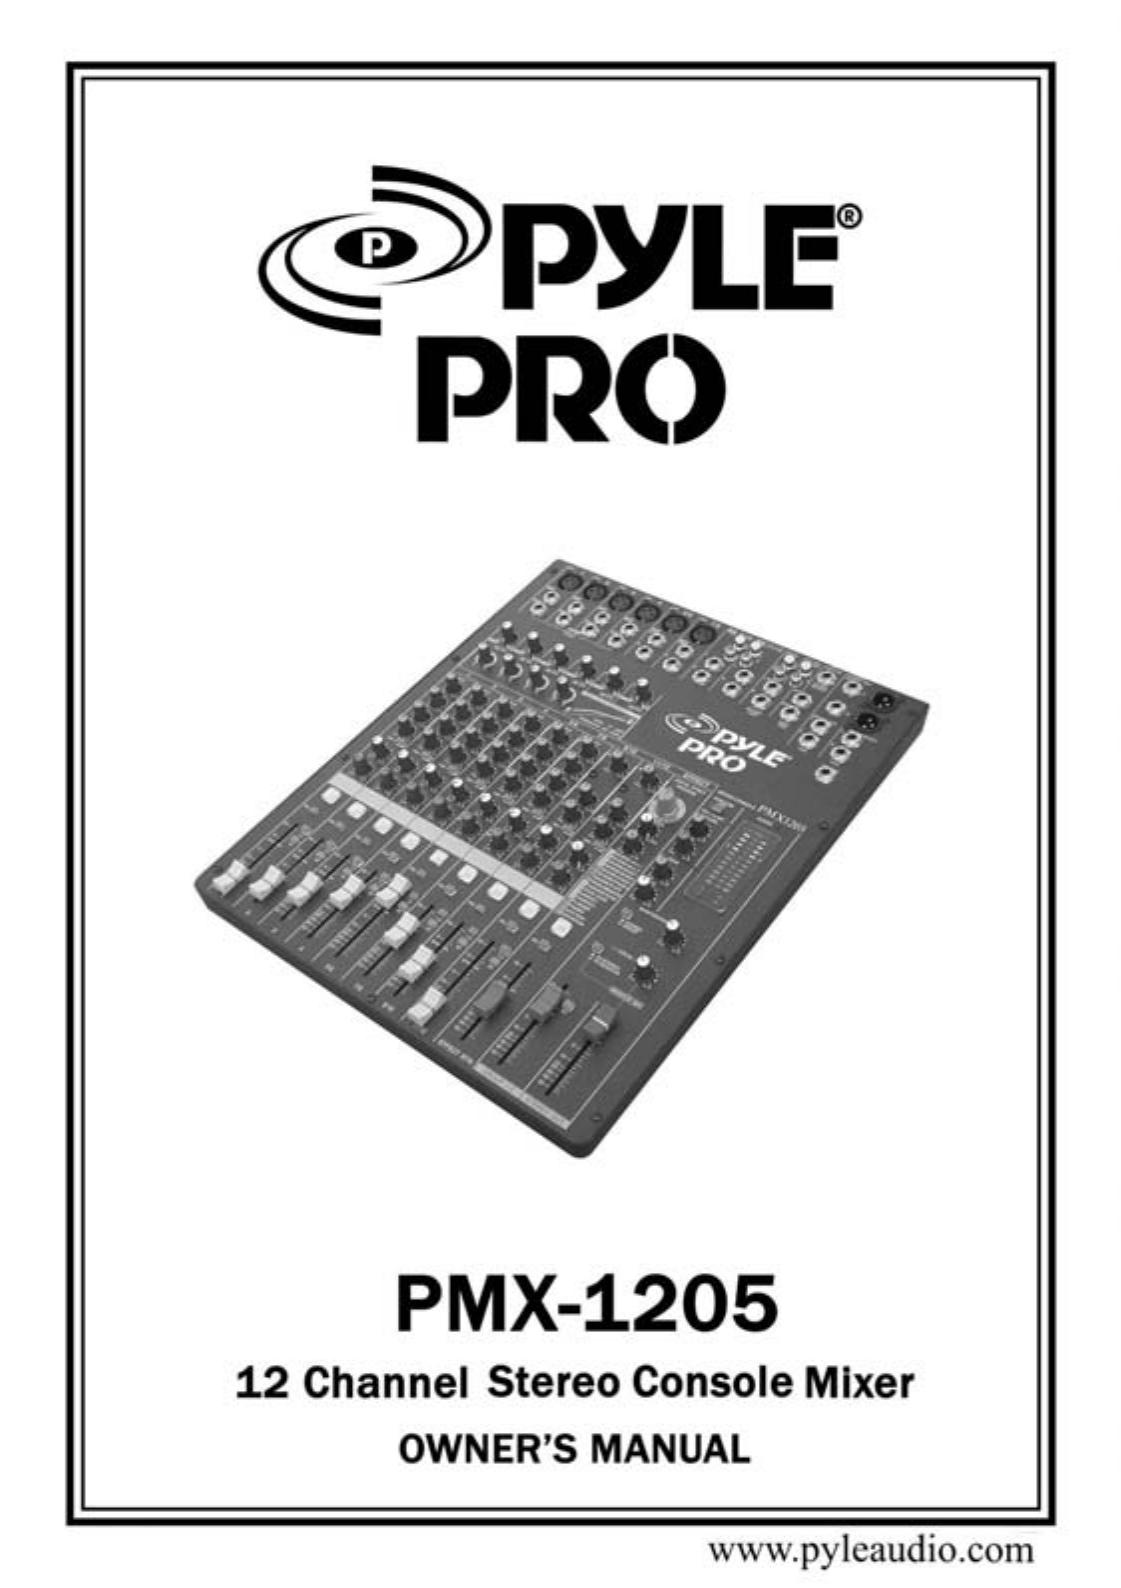 PYLE Audio PMX-1205 Music Mixer User Manual